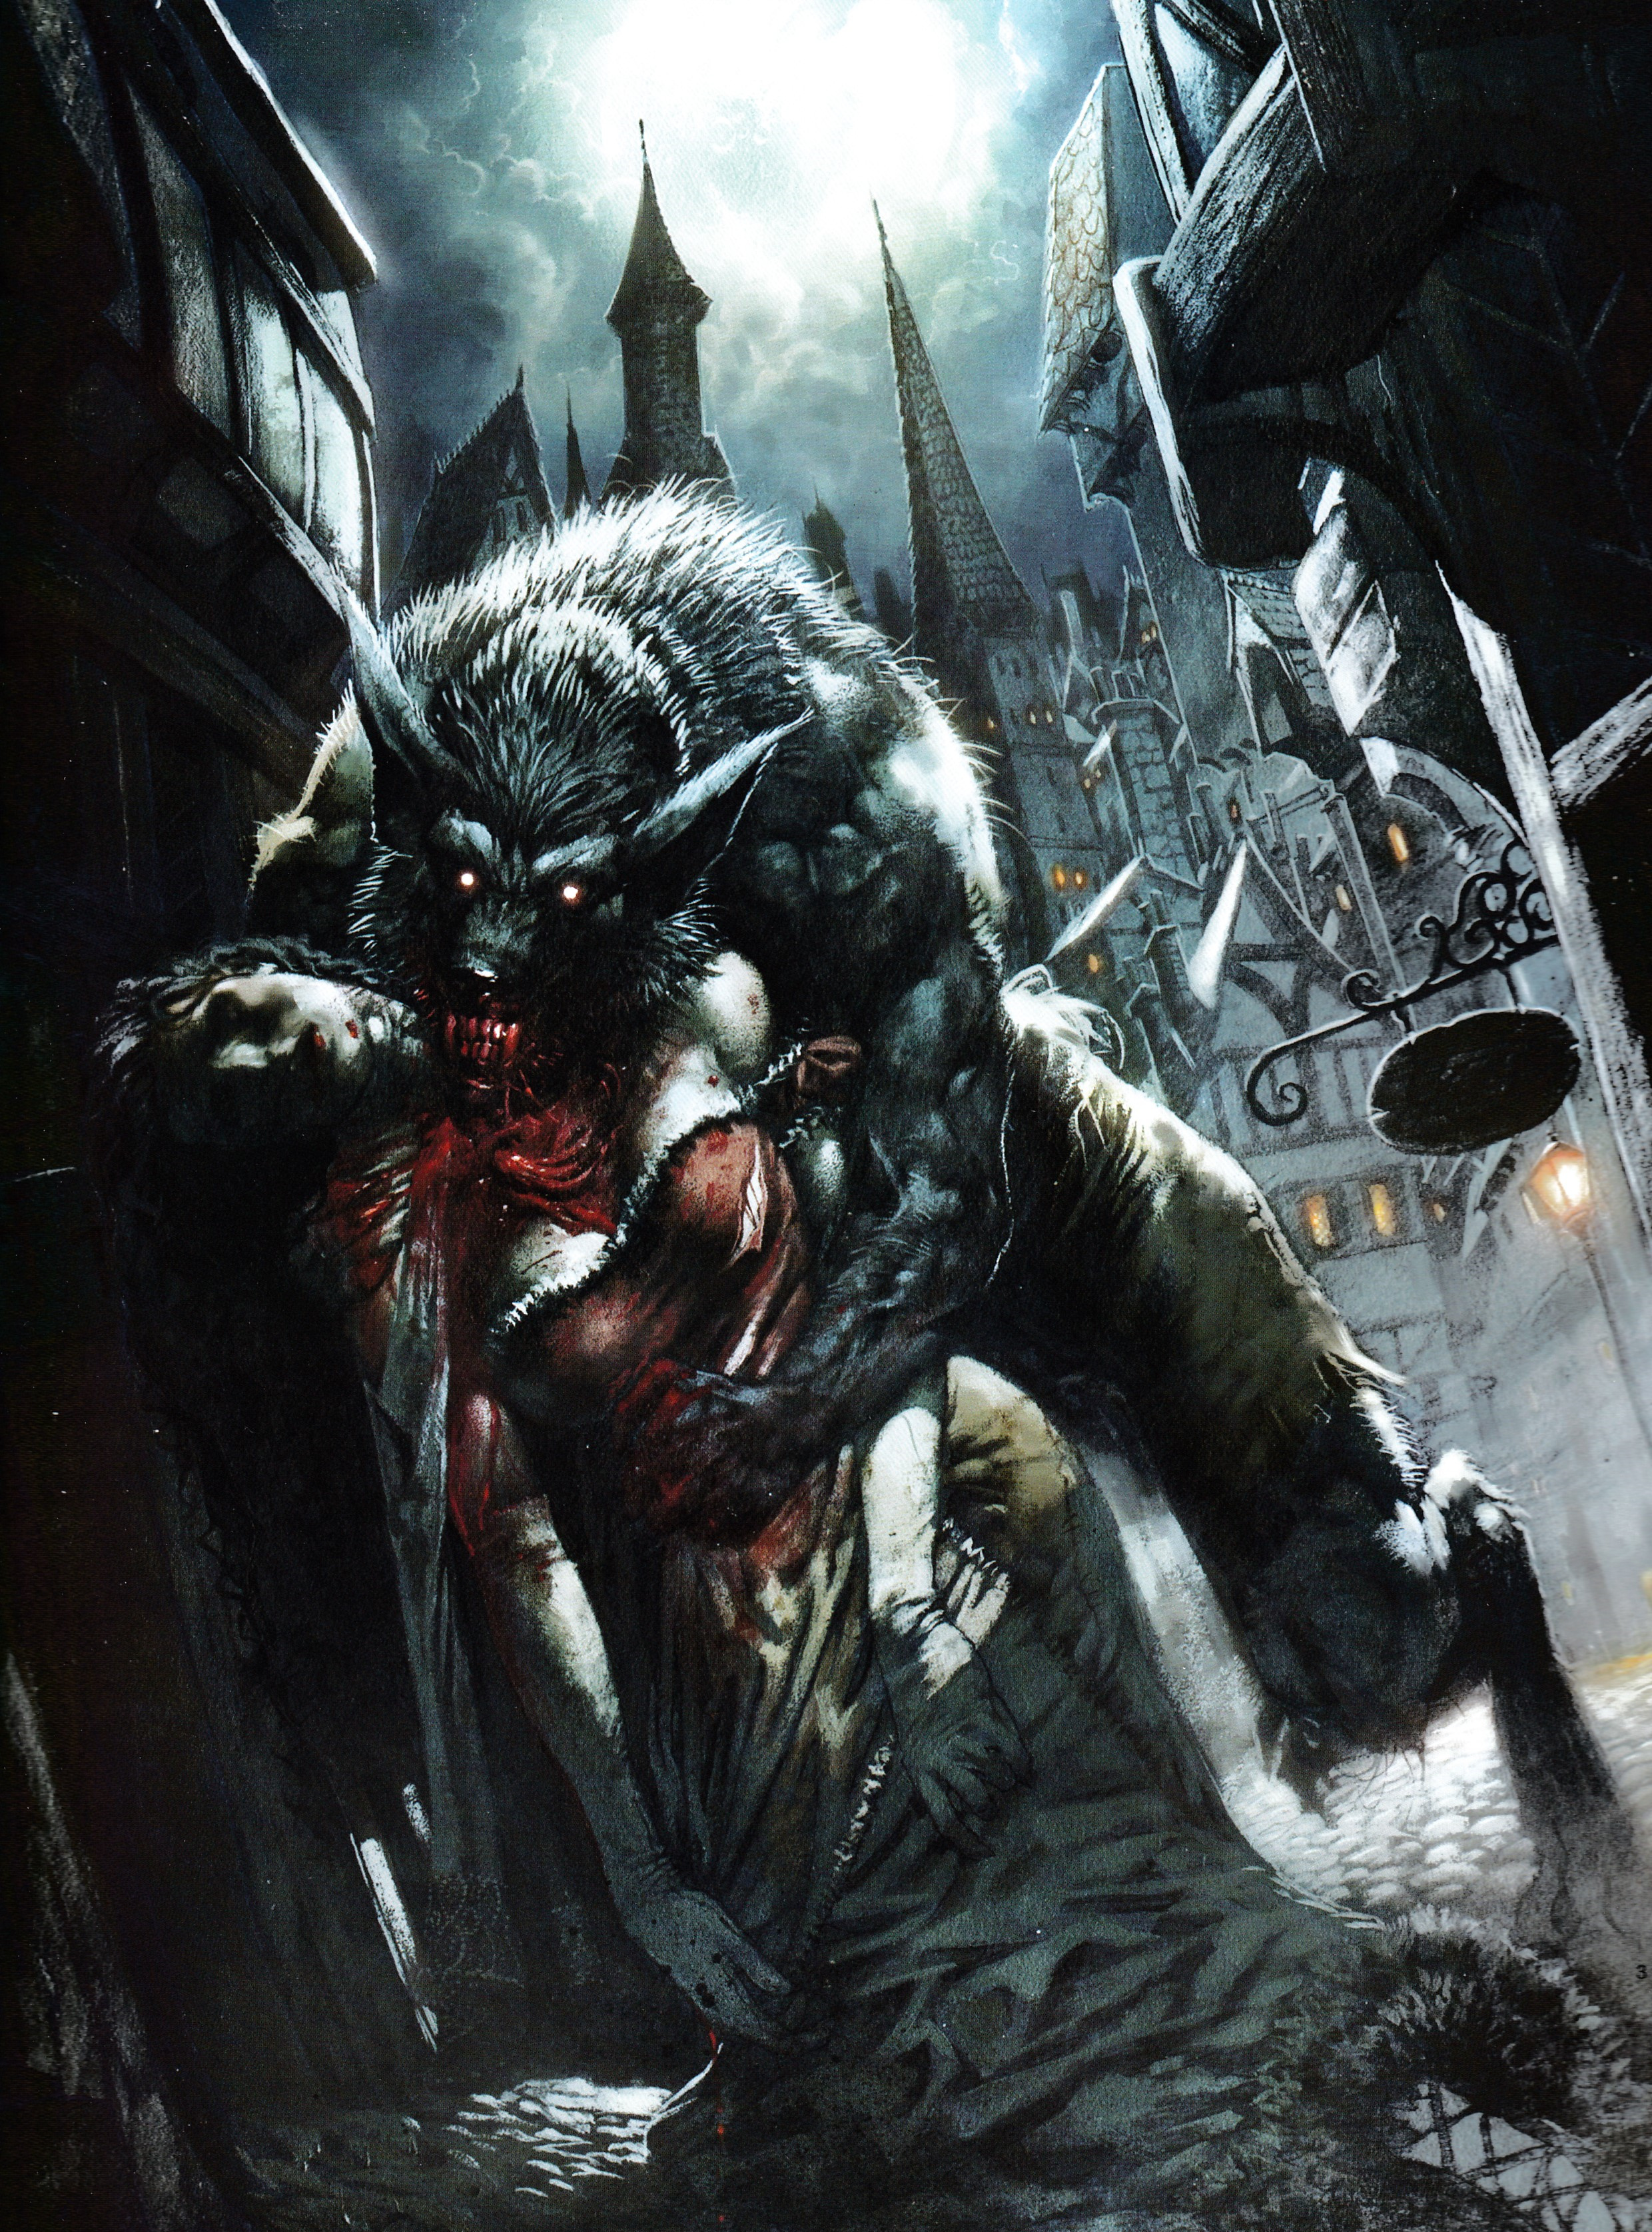 丙烯板画《老伦敦狼人》(1990),作者格雷格·斯特普尔斯